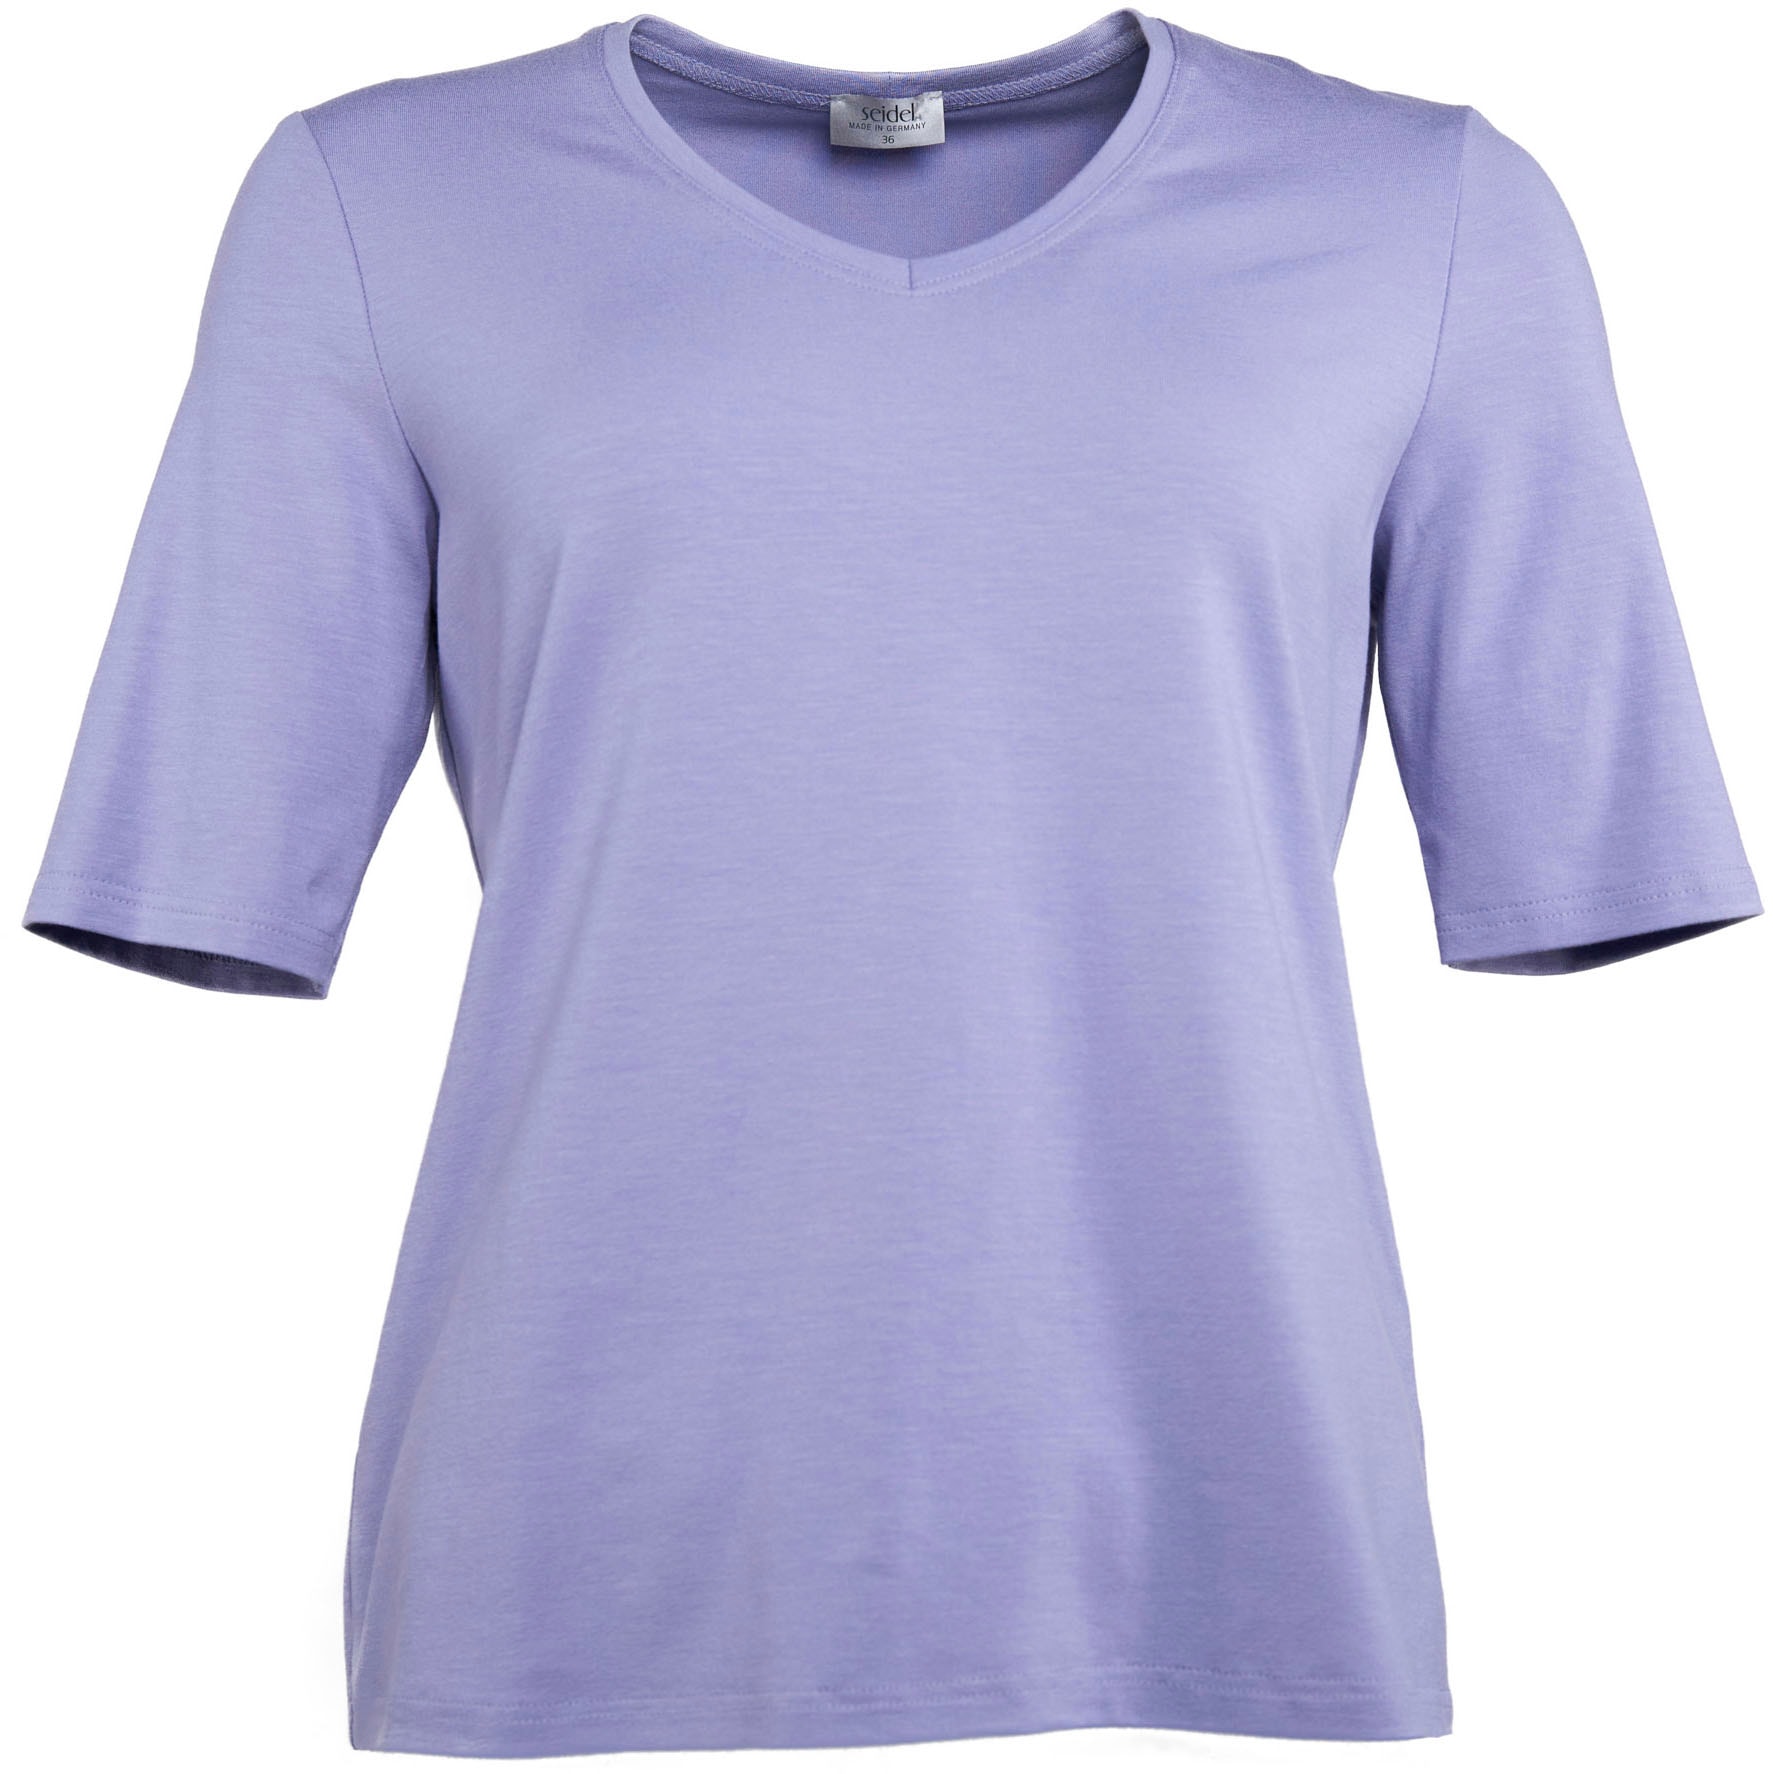 ♕ Seidel Moden V-Shirt, mit Halbarm aus softem Material, MADE IN GERMANY  versandkostenfrei bestellen